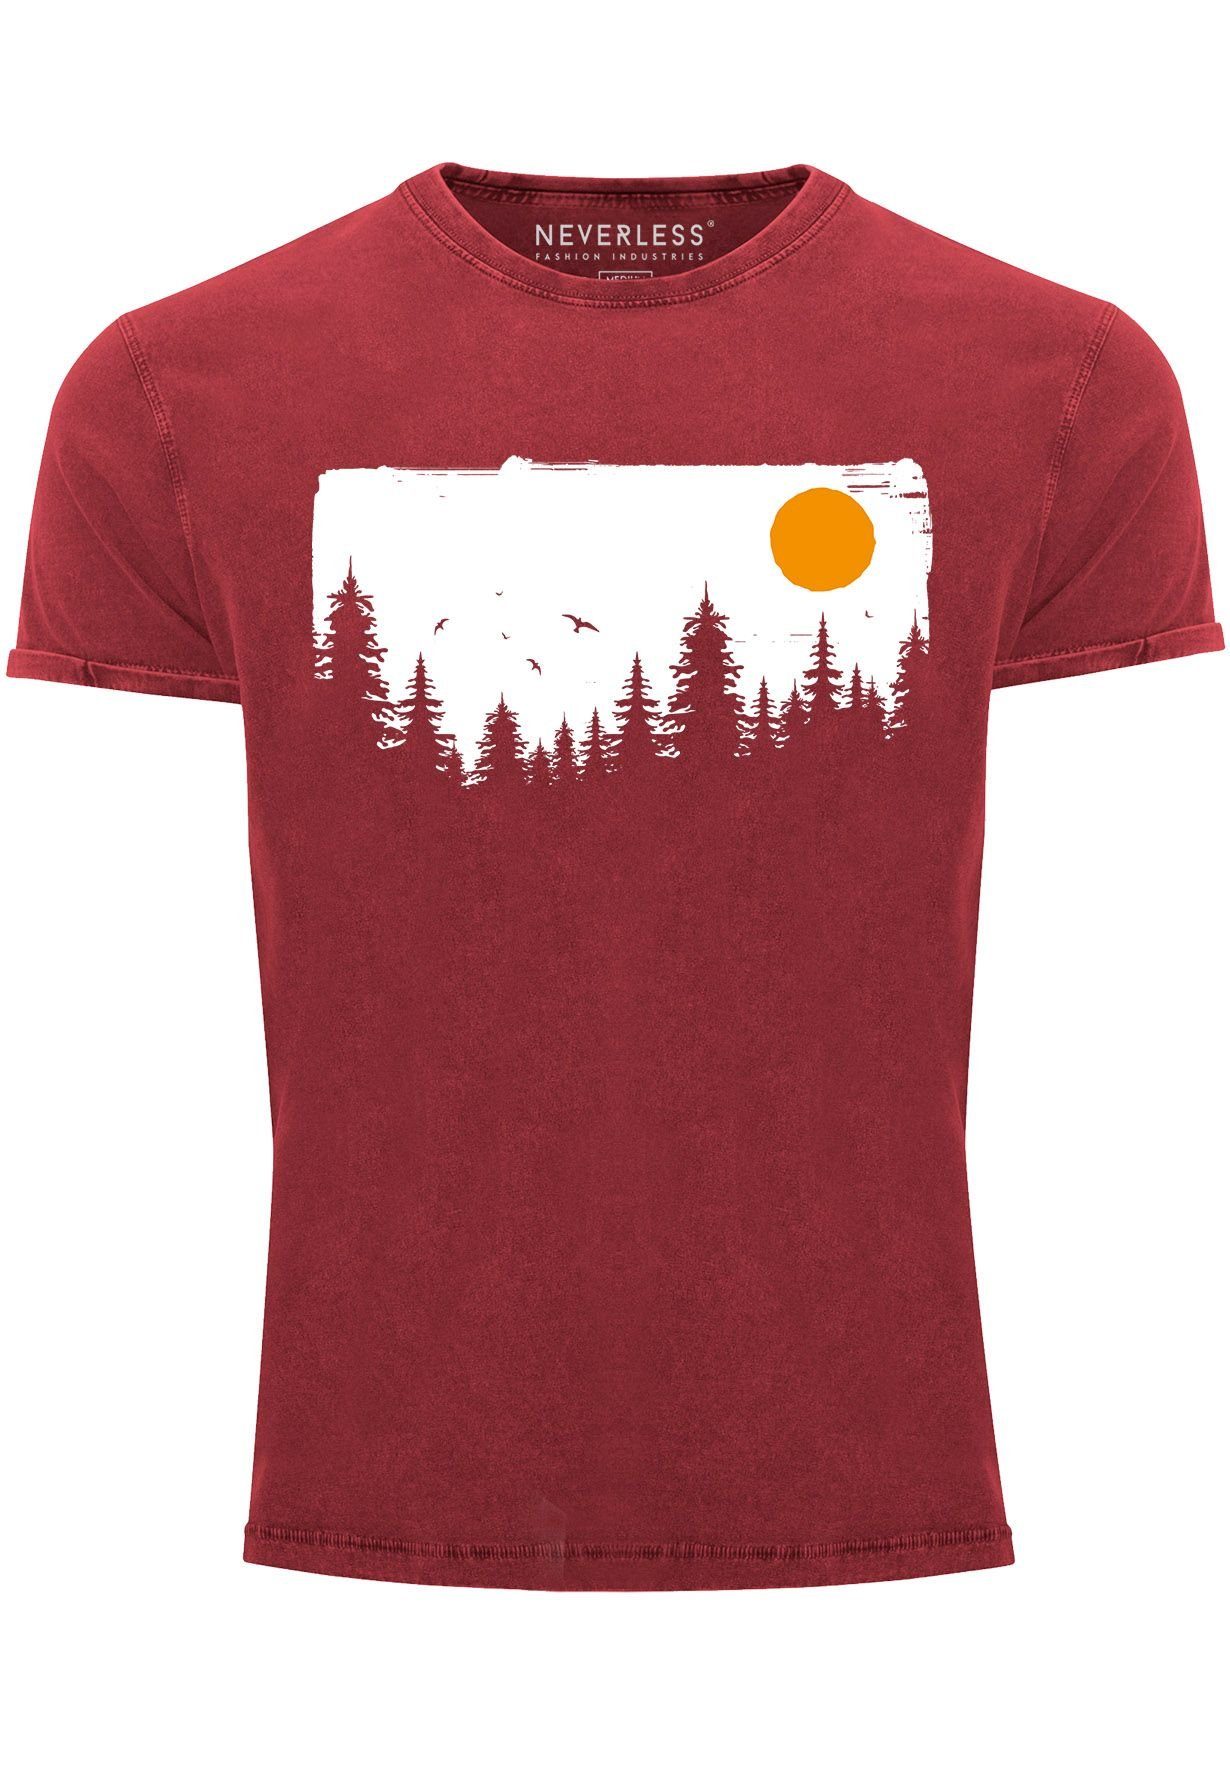 Neverless Print-Shirt Herren Vintage Shirt Wald Bäume Outdoor Adventure Abenteuer Natur-Lieb mit Print rot